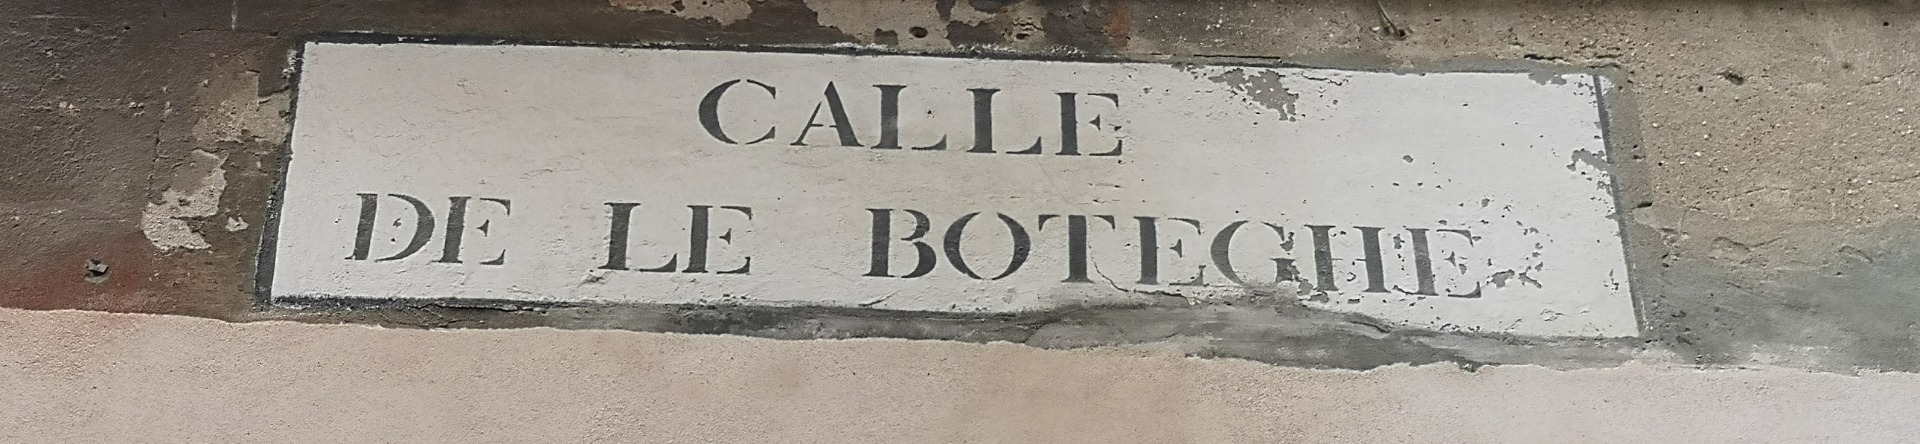 Calle delle Botteghe - Dorsoduro -  Venezia